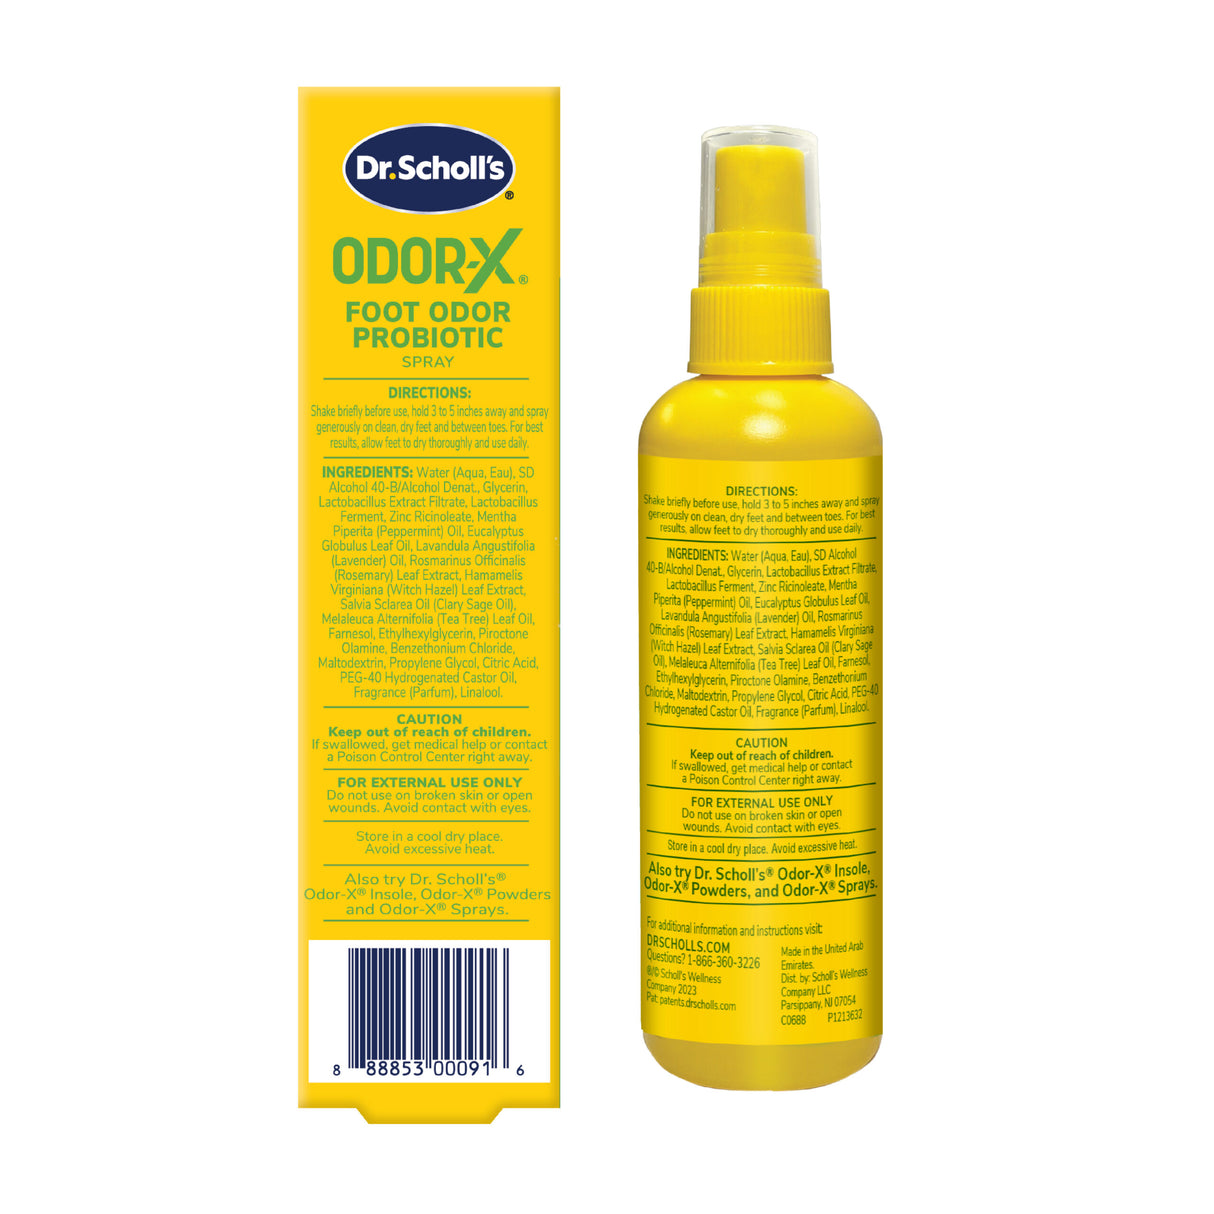 image of odor x foot odor probiotic spray